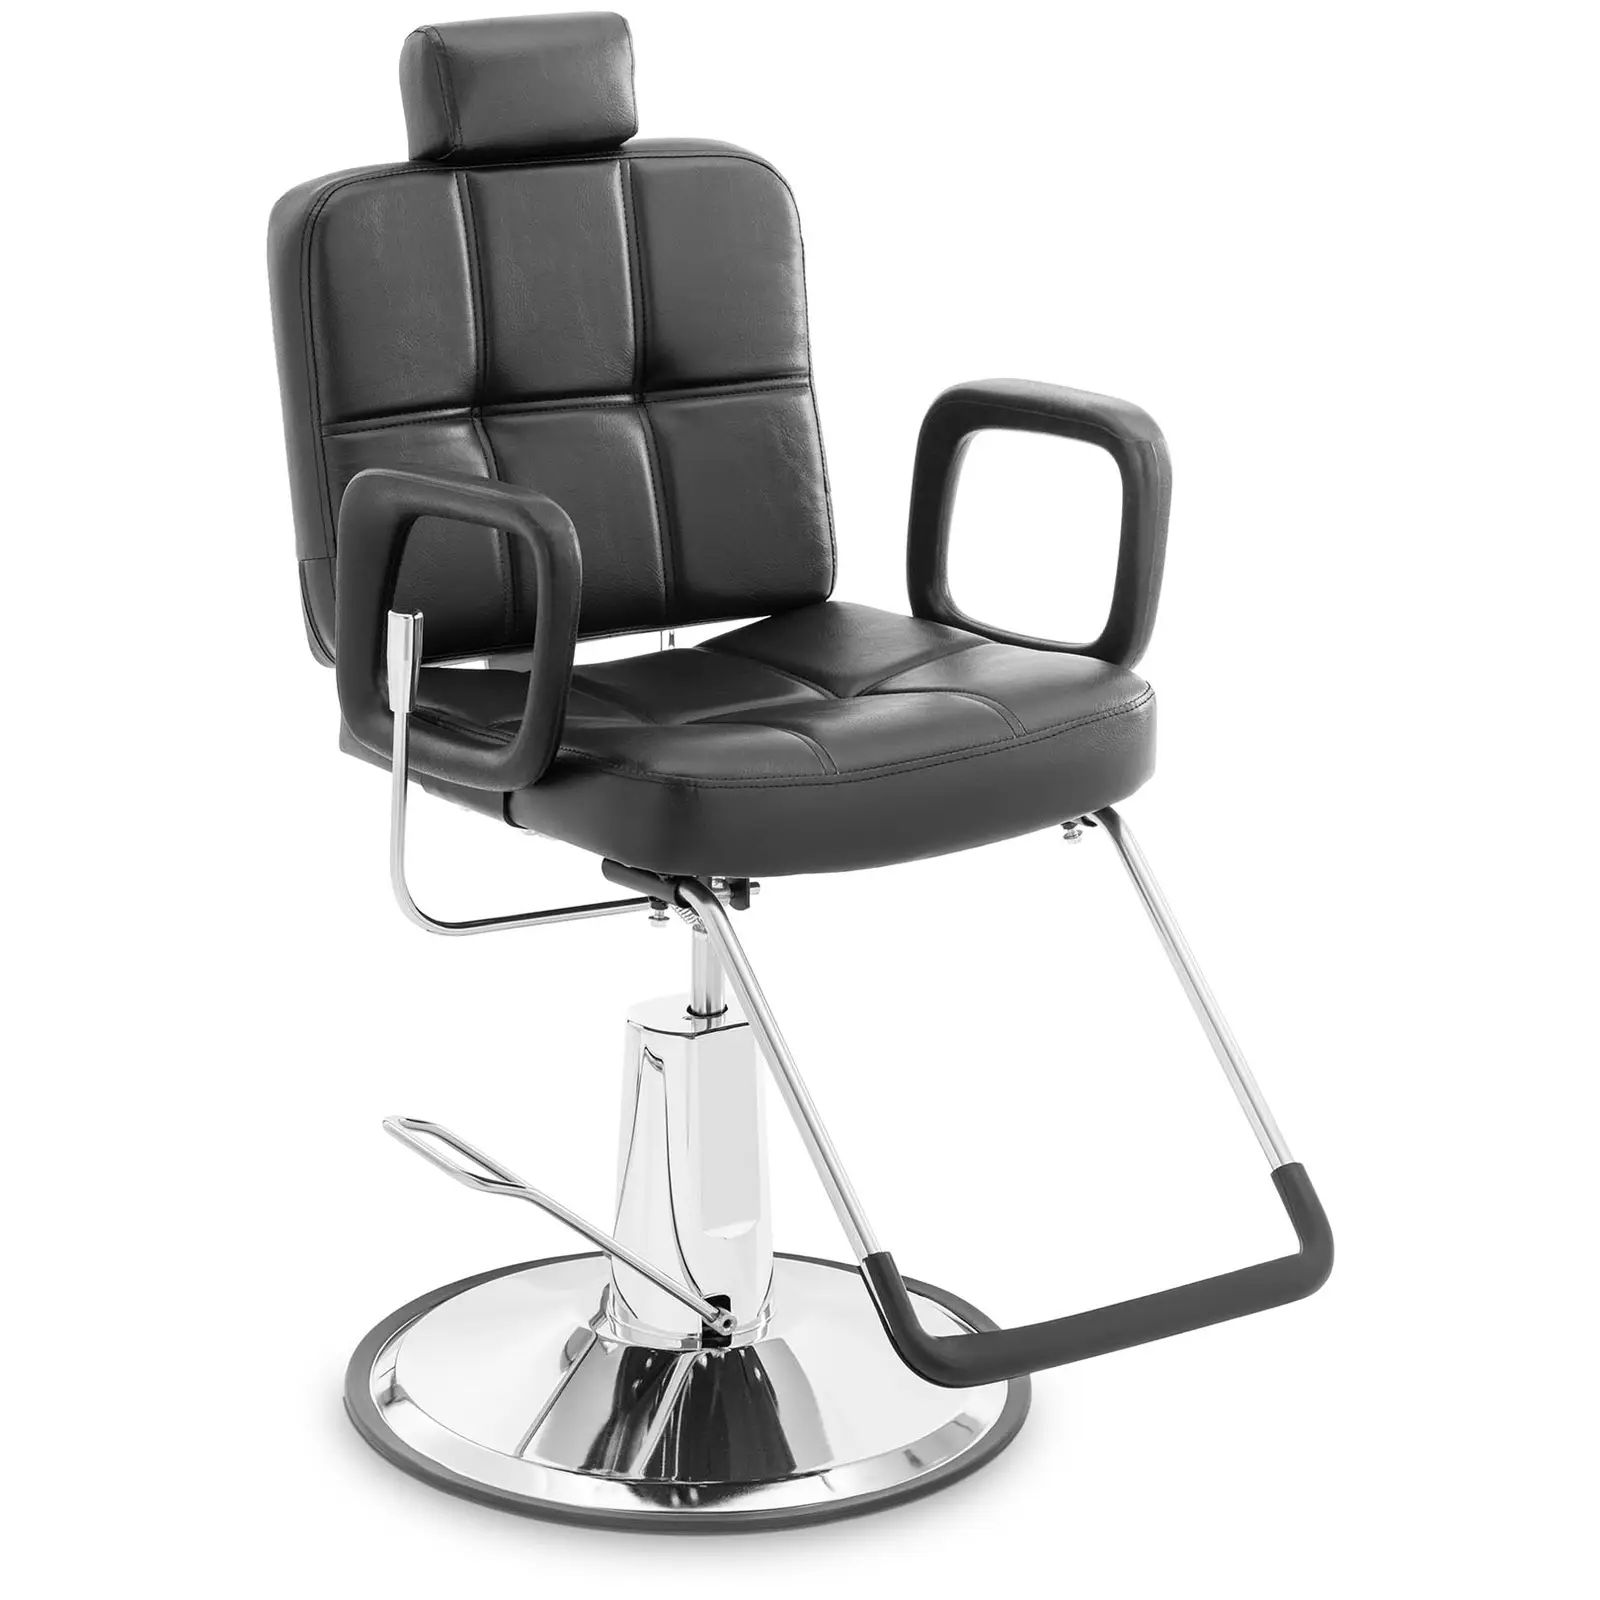 Grožio salono kėdė - galvos ir kojų atrama - 52 - 64 cm - 150 kg - juoda